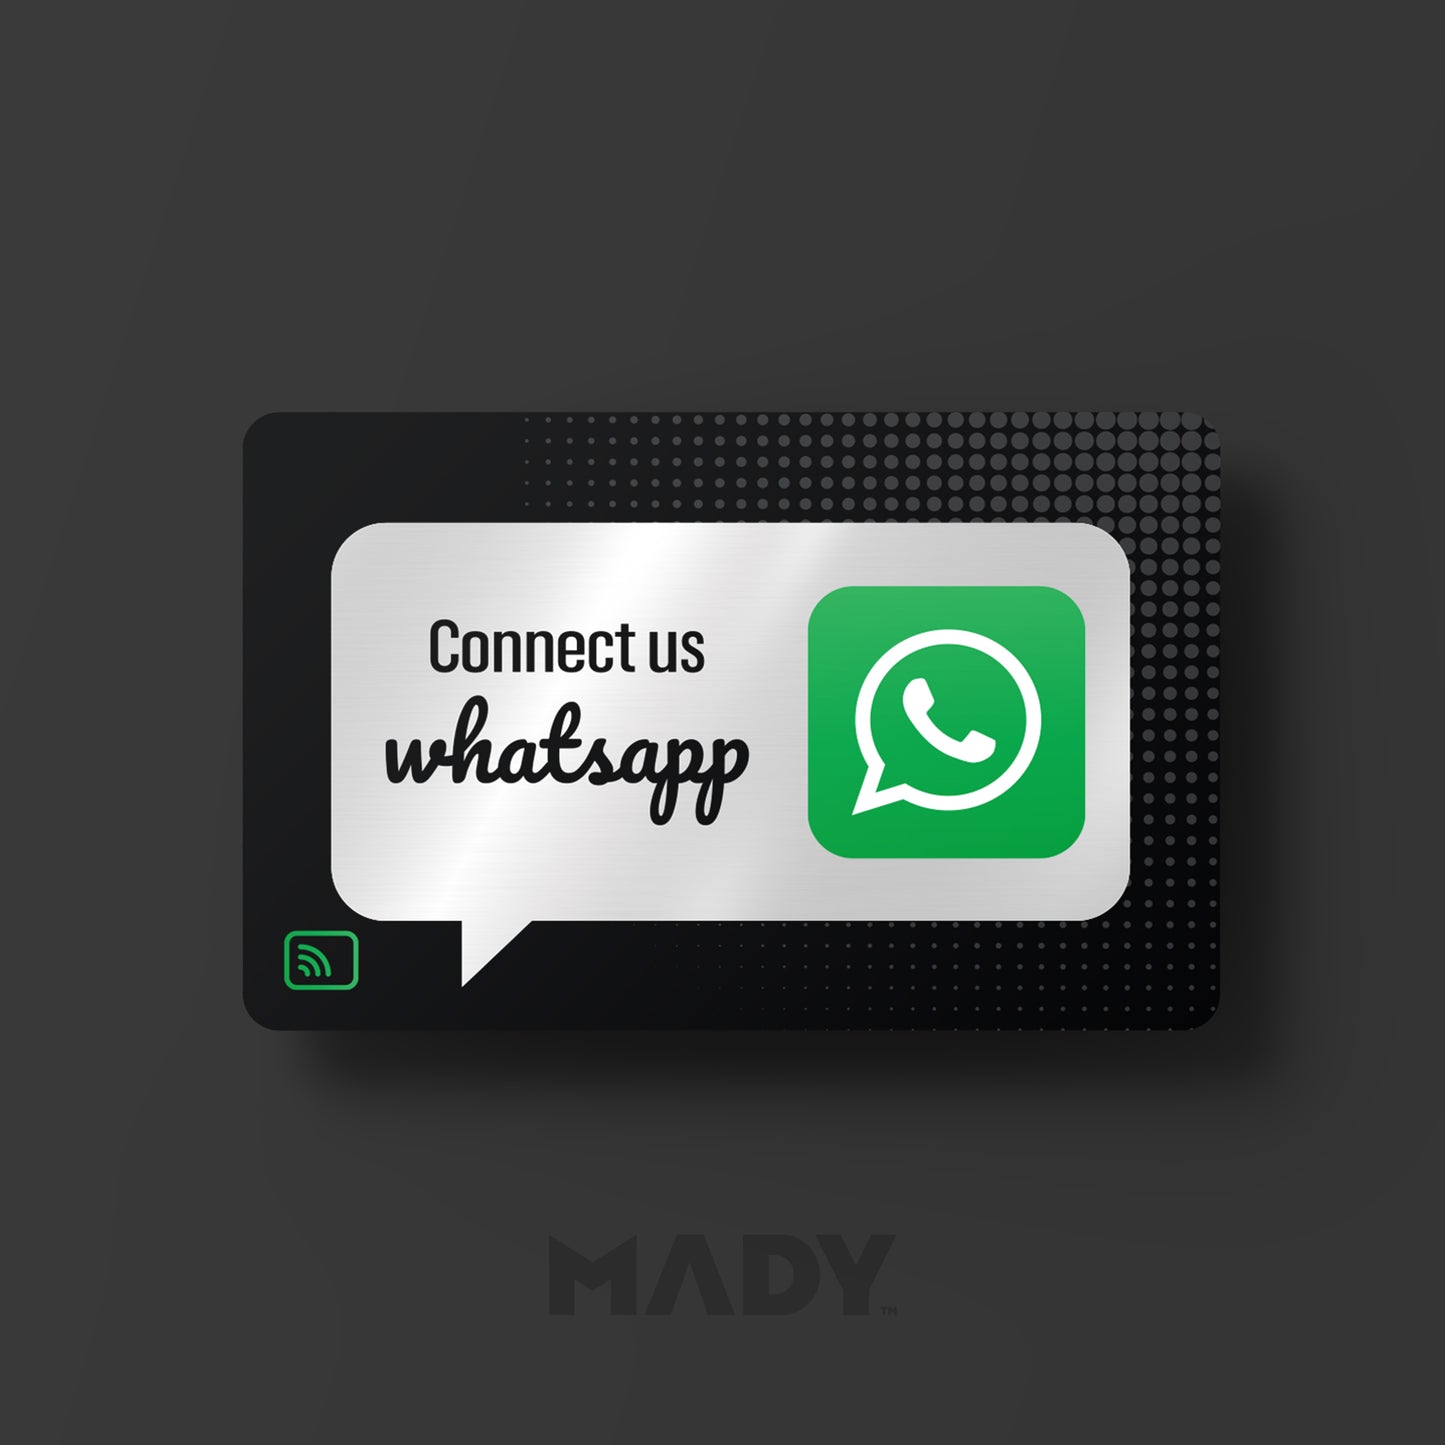 Whatsapp NFC Card